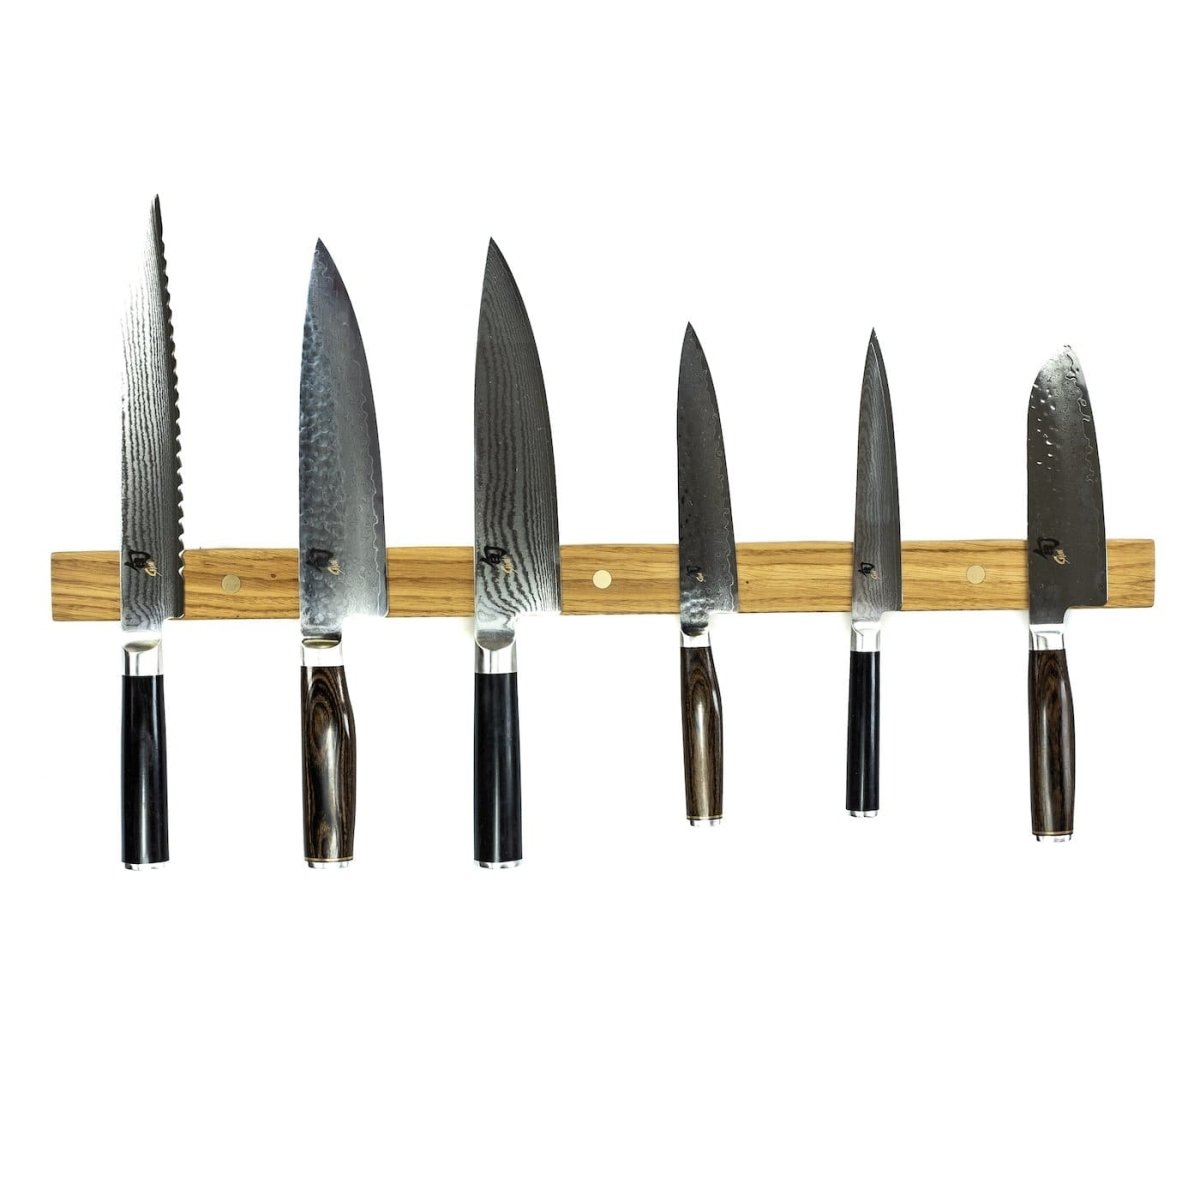 Rune-Jakobsen Woodworks 'Knifeboard Classic' dyb knivmagnet_6 by Rune-Jakobsen Design